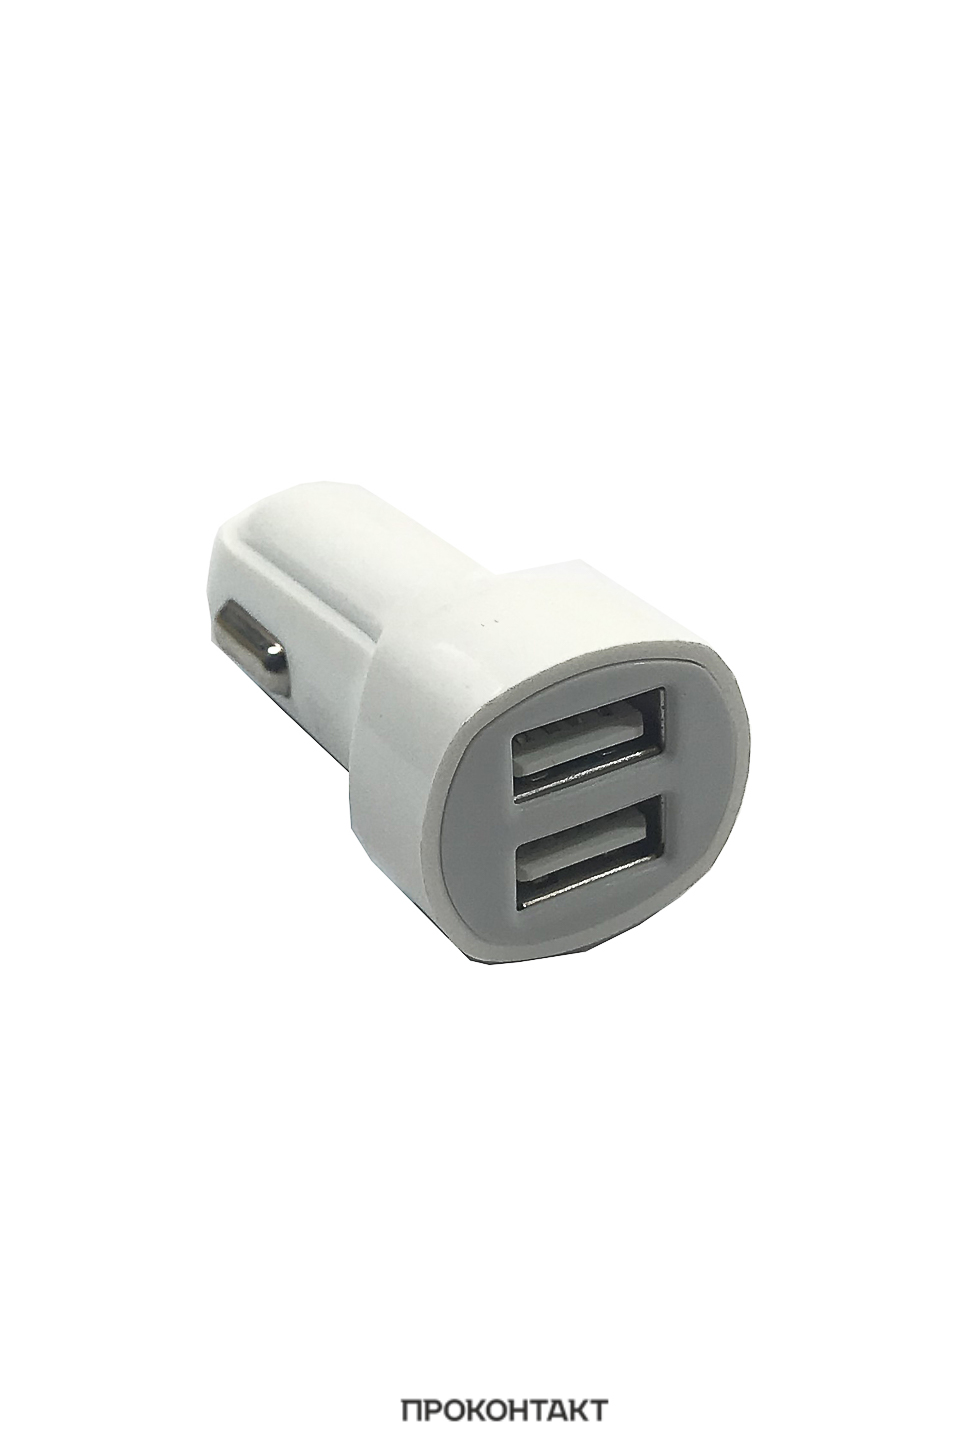 Купить Автомобильное ЗУ на 2 гнезда USB MUJU MJ-C03 (факт. 1700mA) + кабель Lightning (iPhone) в Челябинске